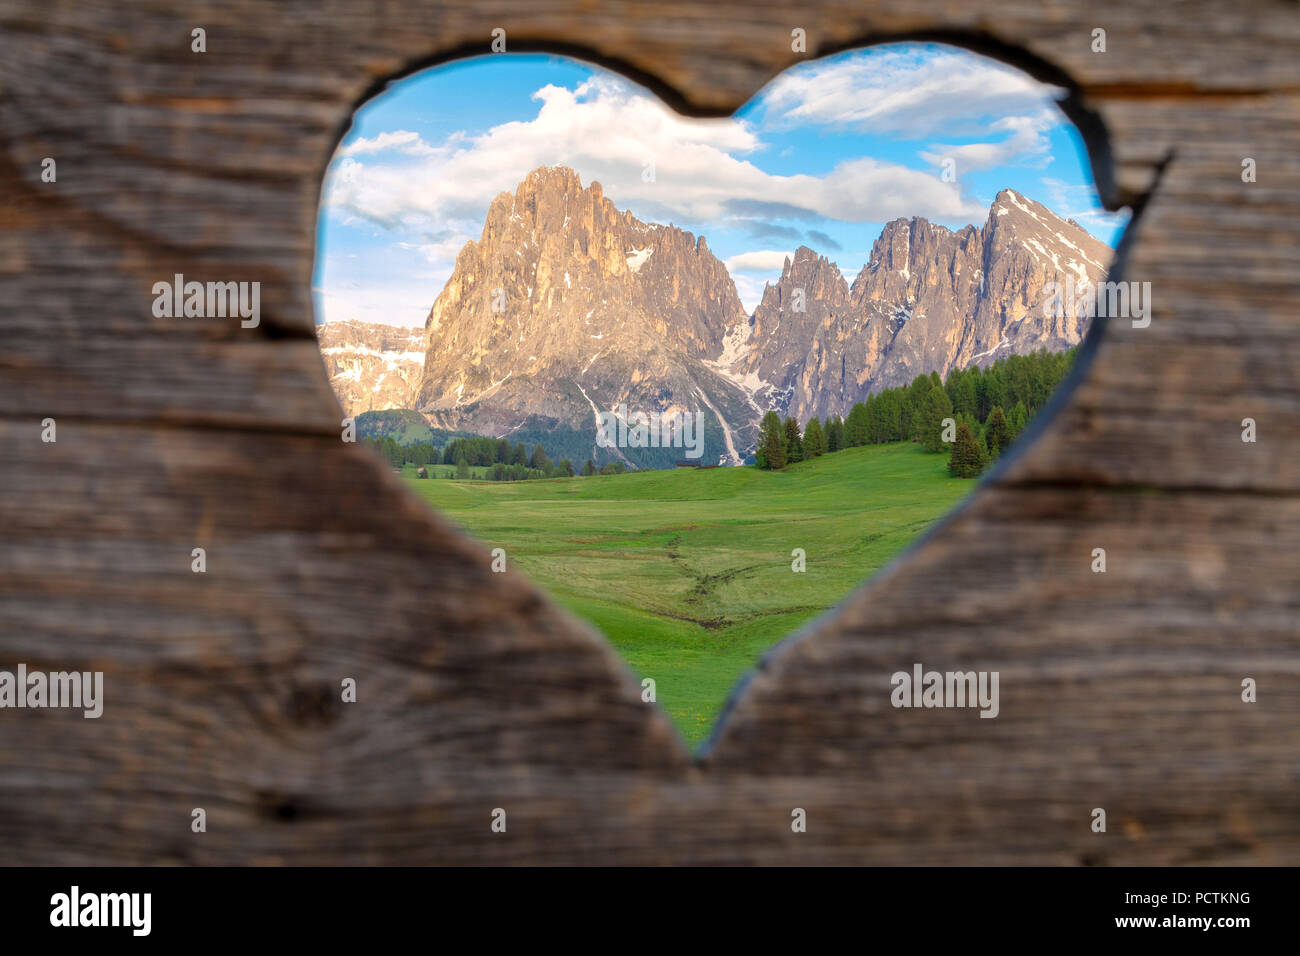 L'Europe, Italie, Bolzano, le Tyrol du Sud, à l'Alpe di Siusi - Alpe di Siusi, Dolomites, le groupe de sassolungo langkofel / vus de l'Alpe di Siusi / Seiser Alm à travers une fenêtre en forme de cœur Banque D'Images